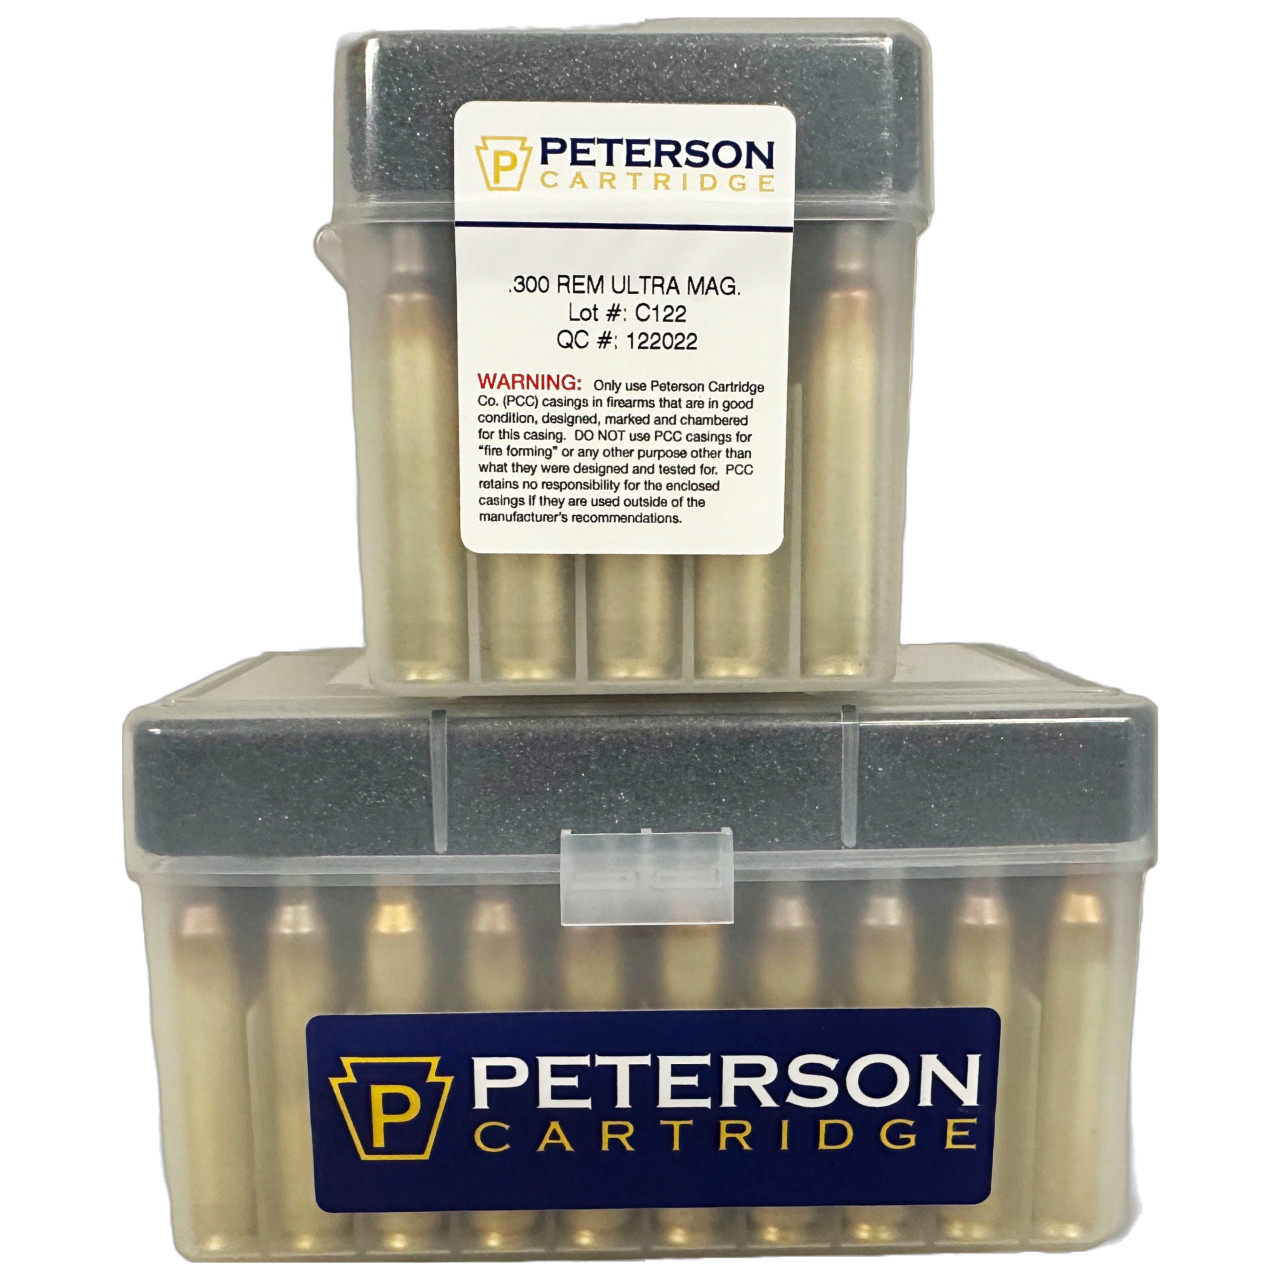 30 Nosler Brass  Peterson Cartridge